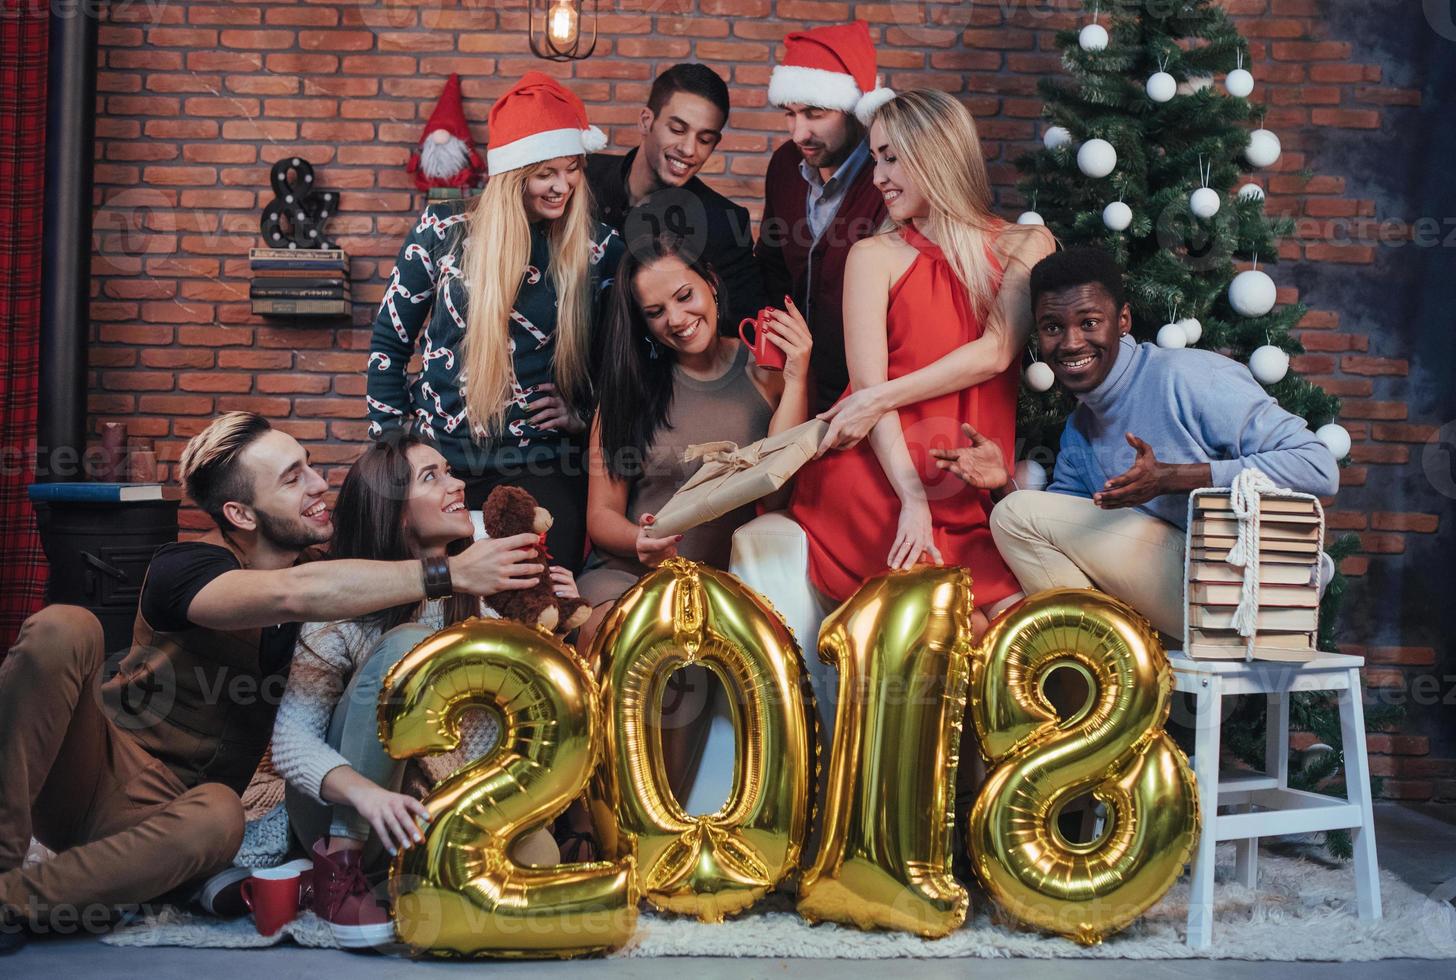 groep vrolijke oude vrienden communiceren met elkaar. het nieuwe jaar van 2018 komt eraan. het nieuwe jaar vieren in een gezellige huiselijke sfeer foto